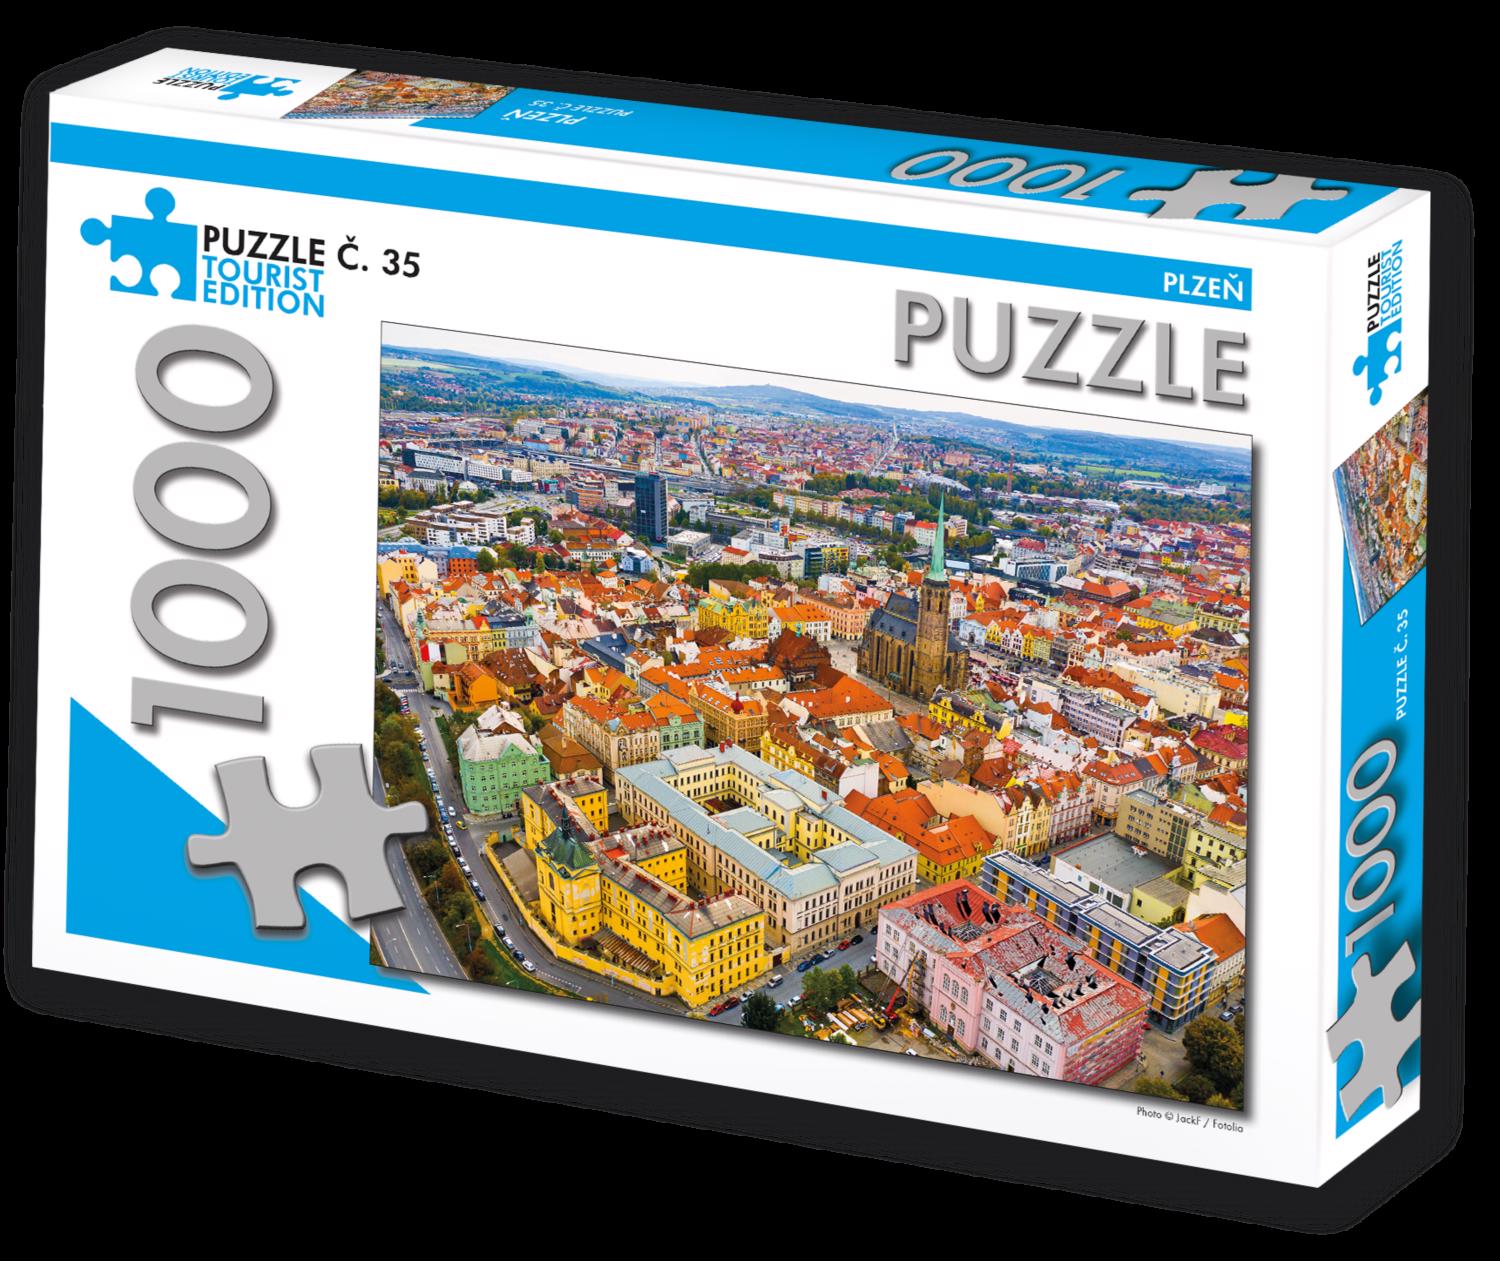 Puzzle Plzeň